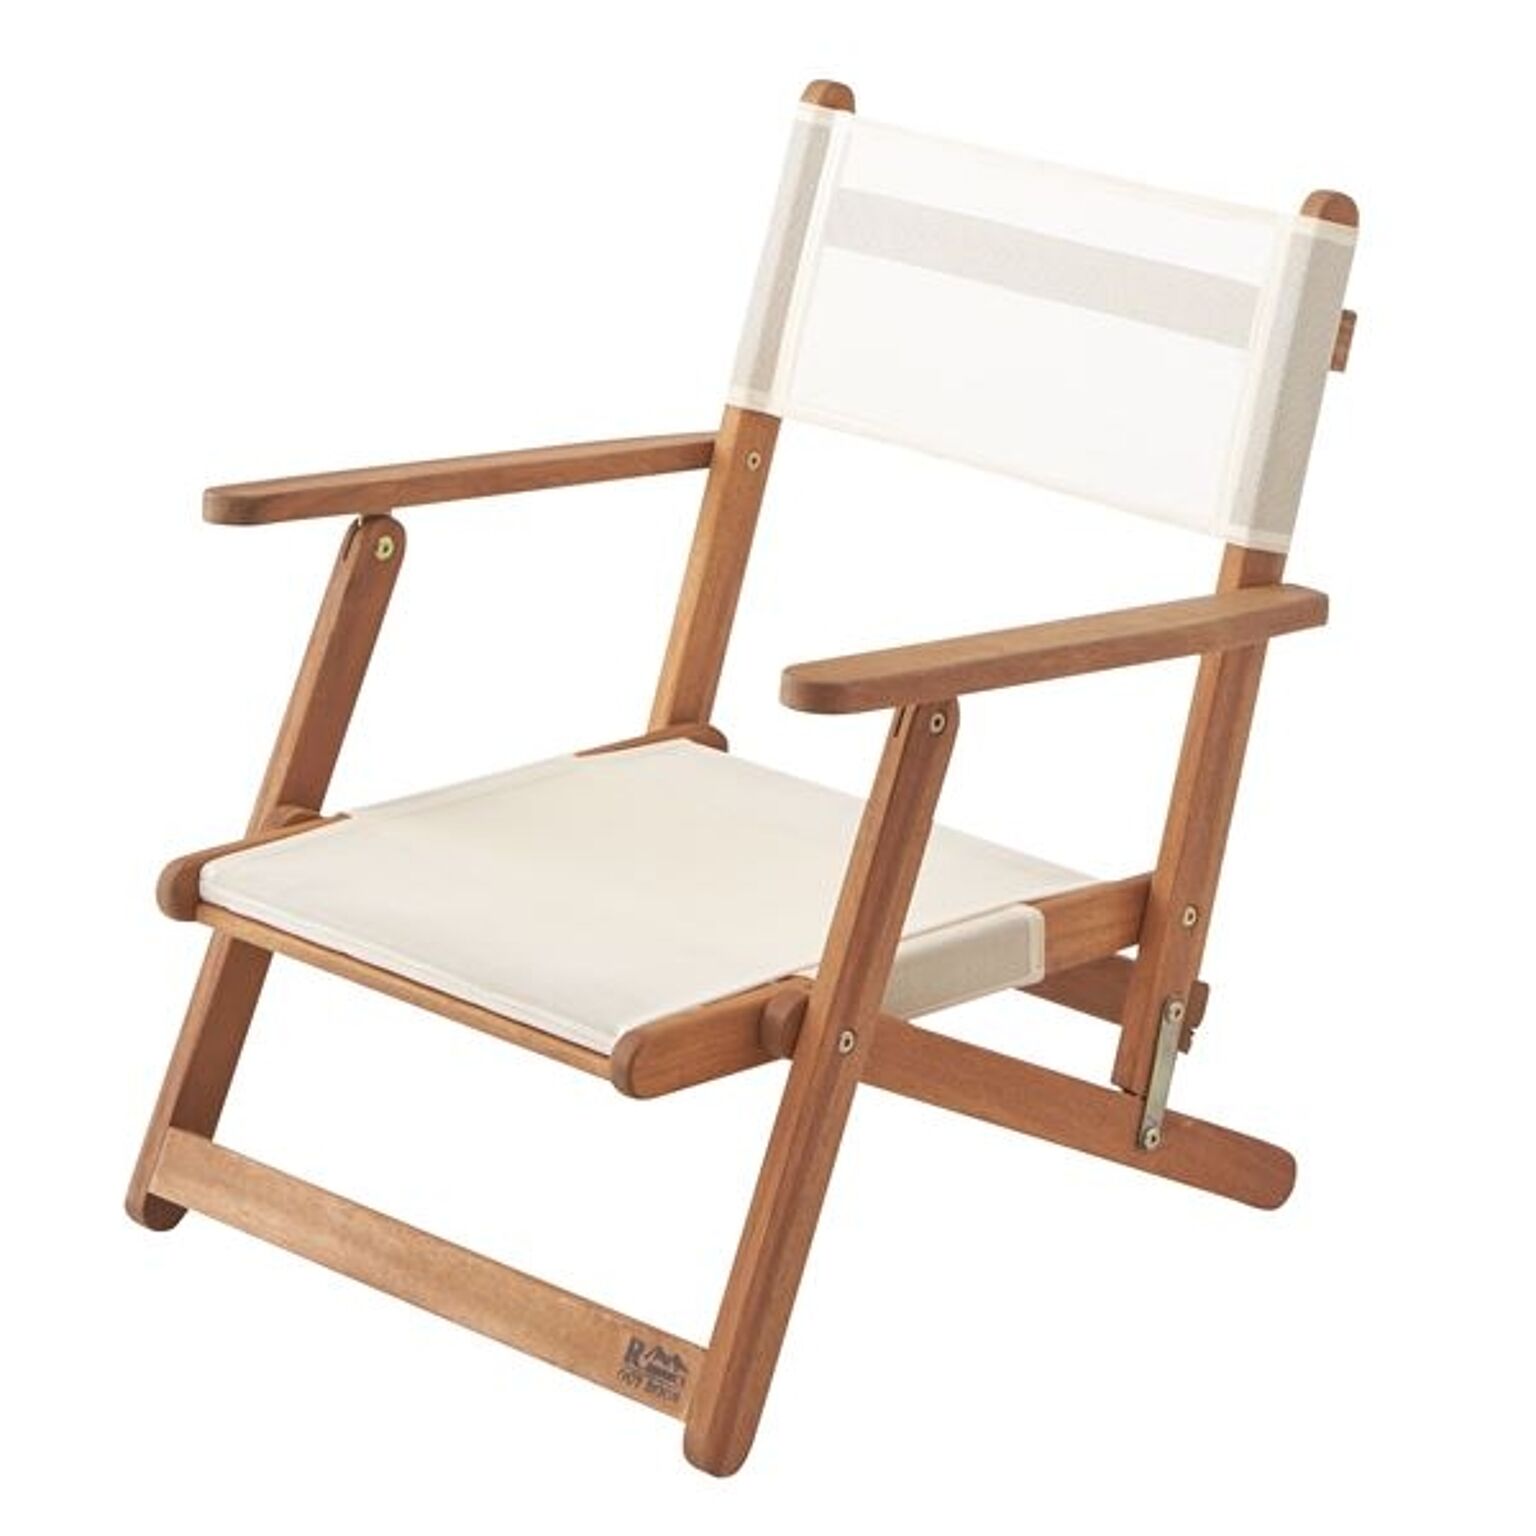 天然木フォールディングチェア(折りたたみ椅子) 木製/アカシア NX-511 〔アウトドア キャンプ お庭 テラス〕